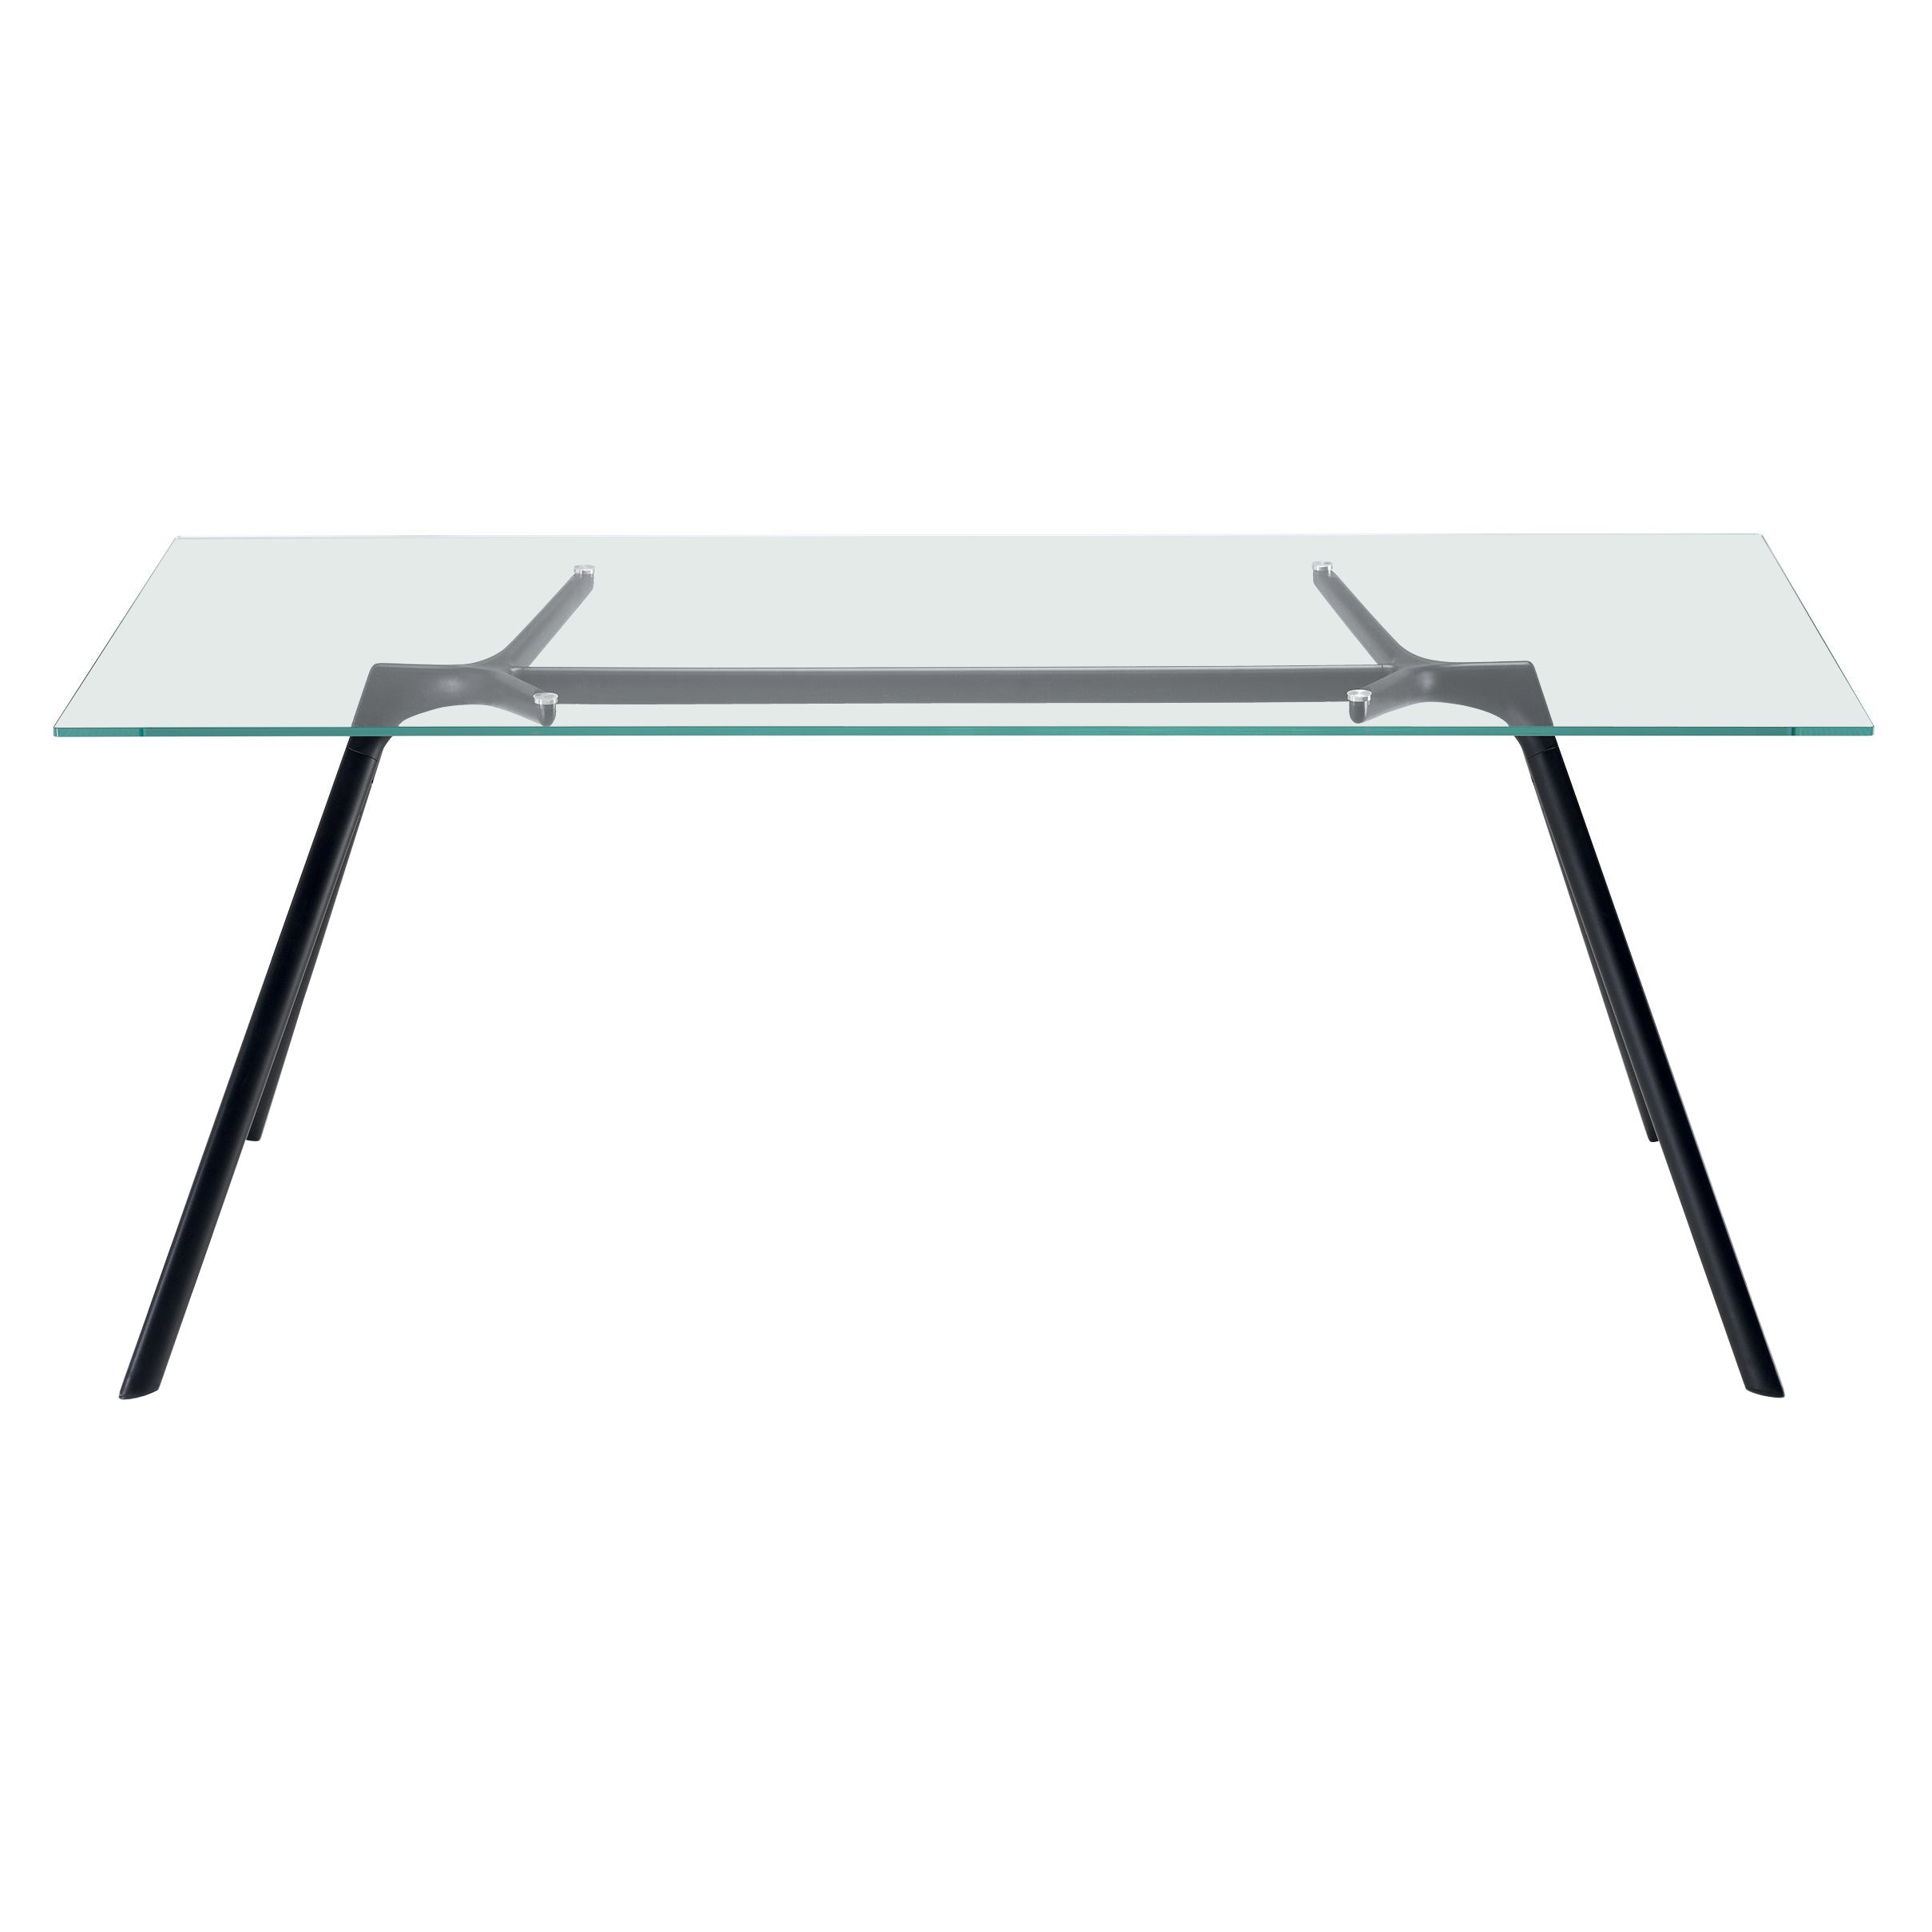 Petite table Alias 45A avec plateau en verre et cadre en aluminium laqué noir